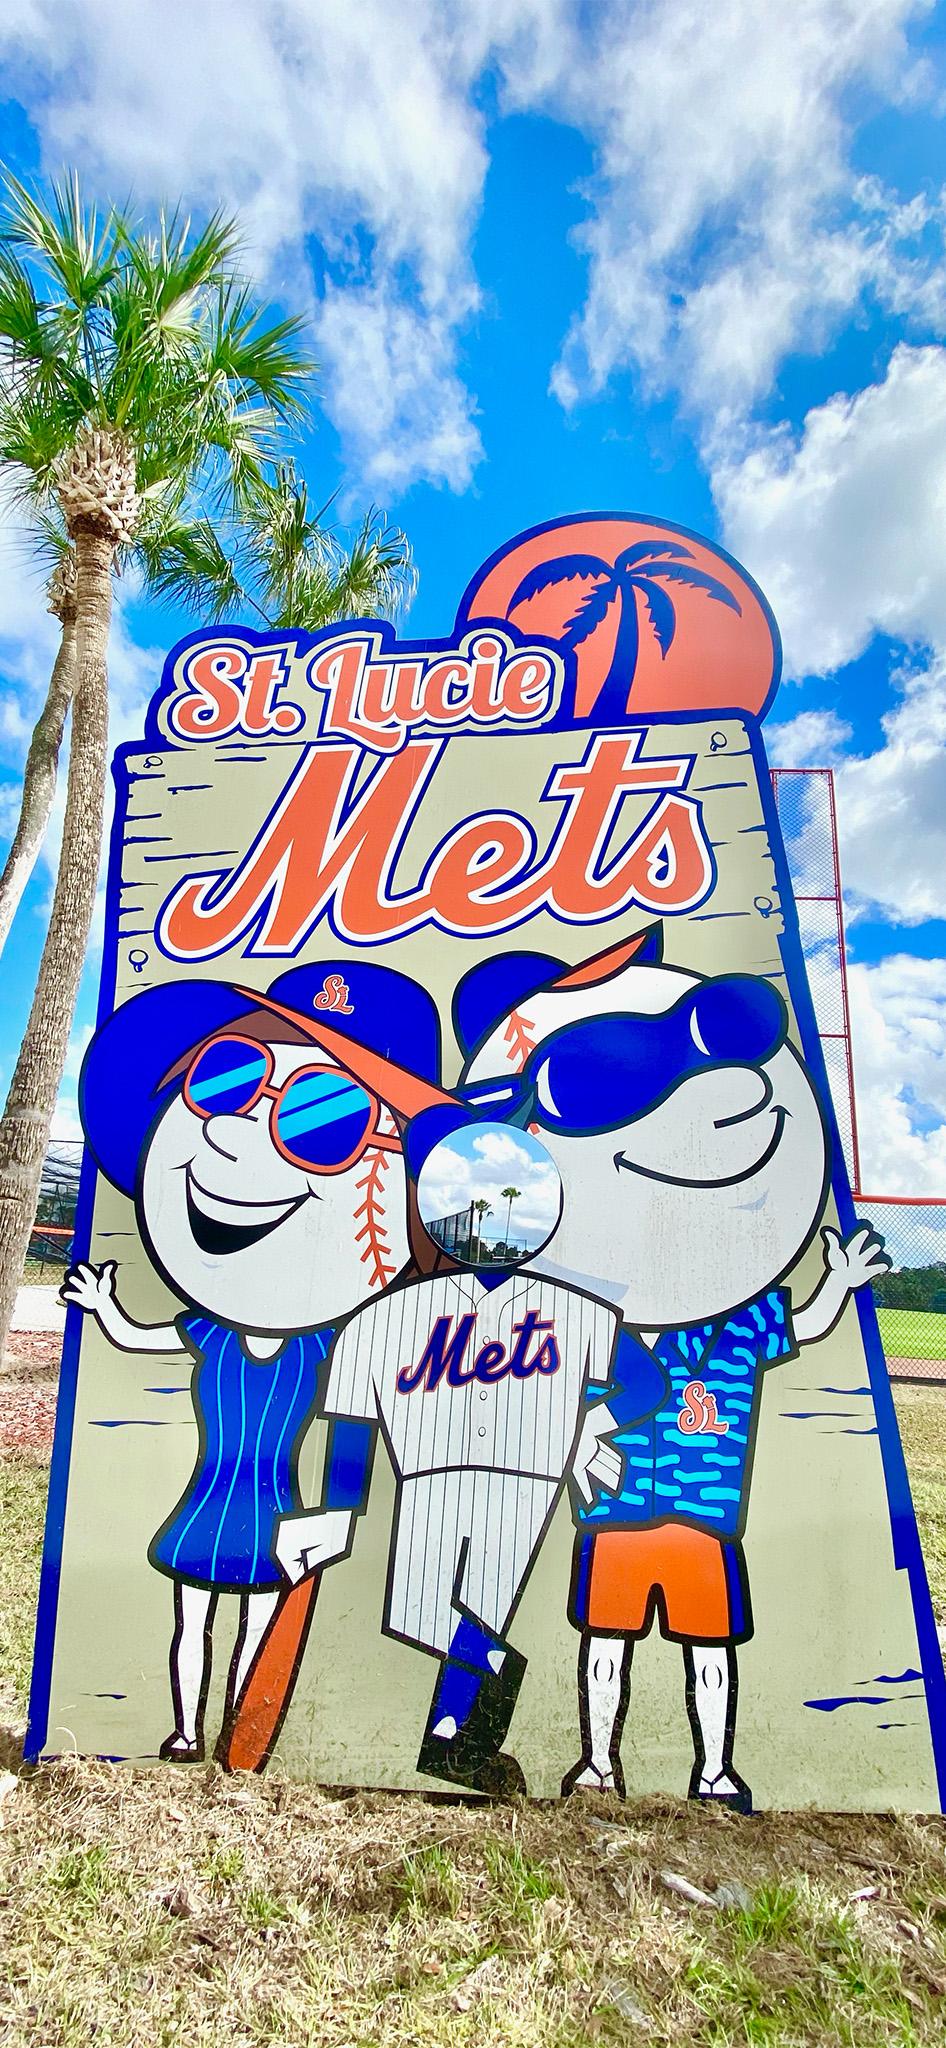 New York Mets Wallpapers - Wallpaper Sun